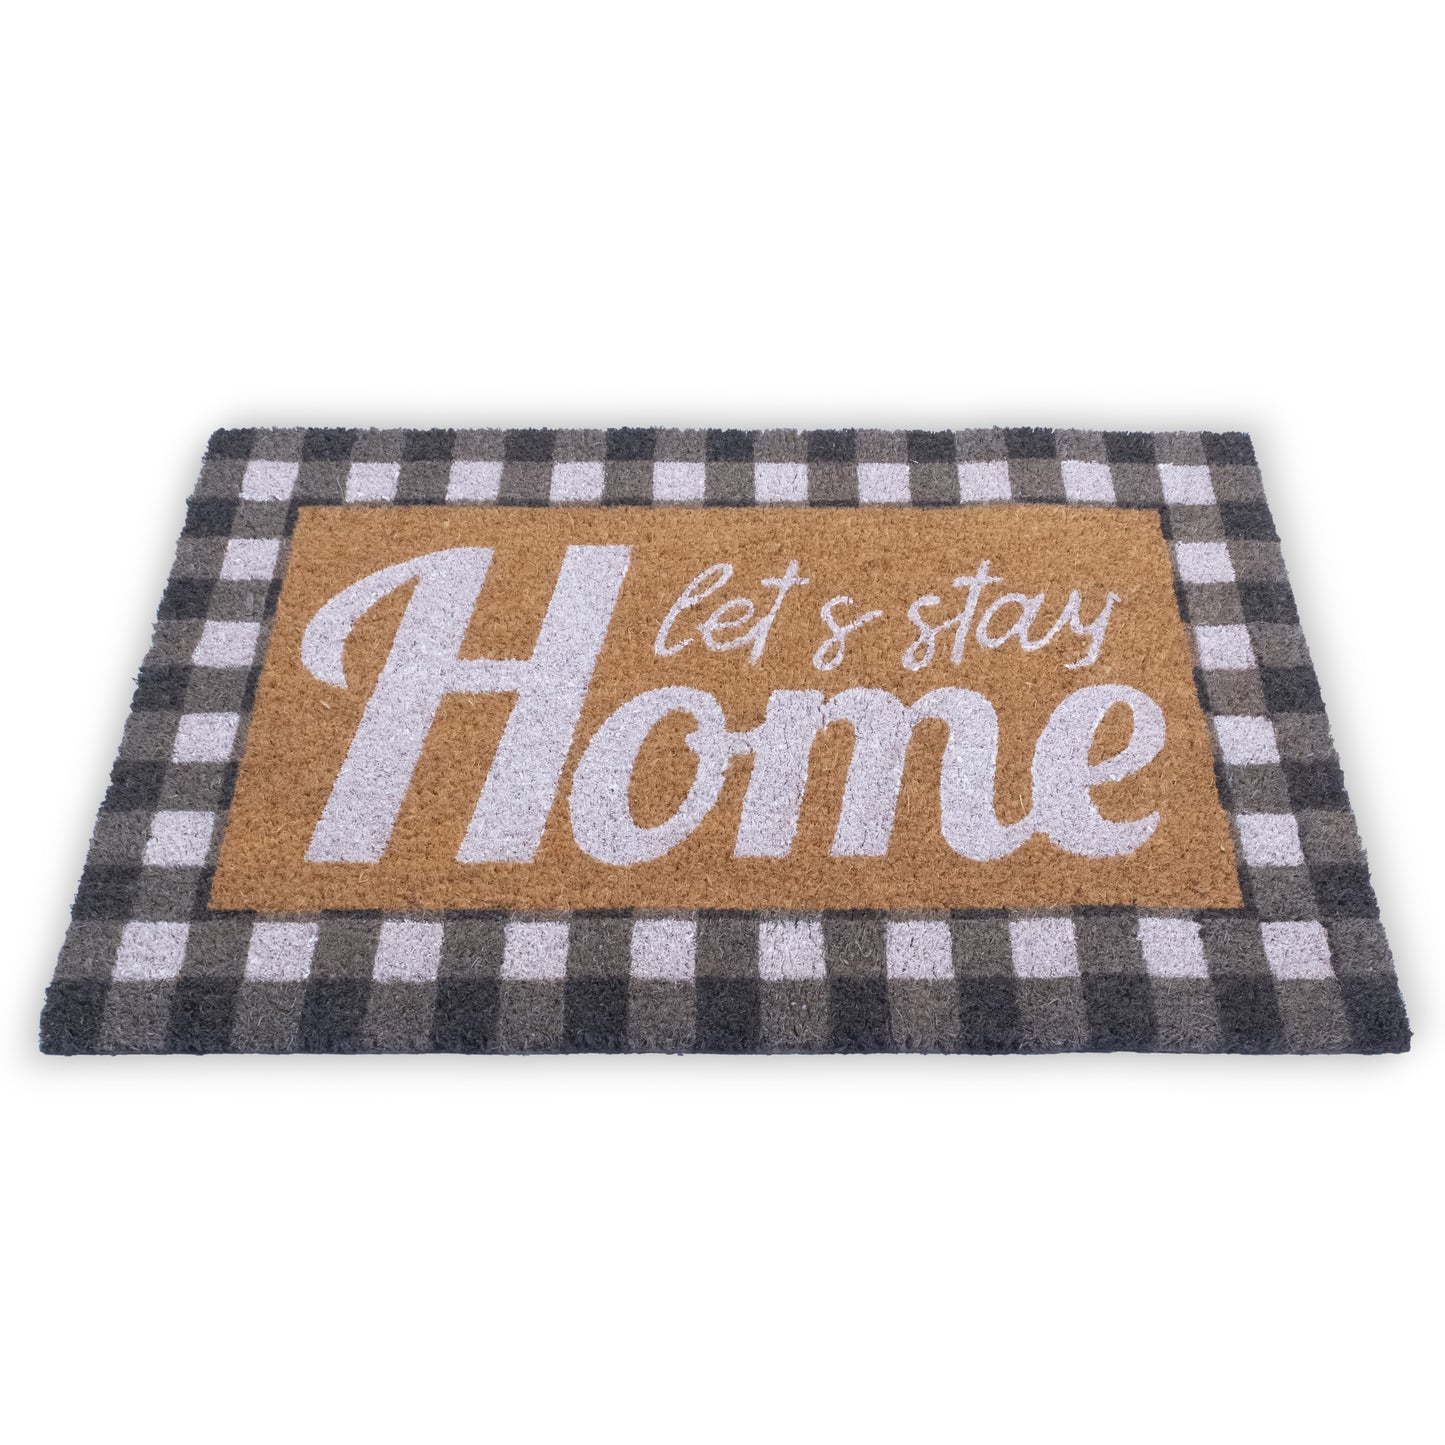 Let's Stay Home Natural Coir Non Slip 28 in. x 18 in. Indoor and Outdoor Doormat